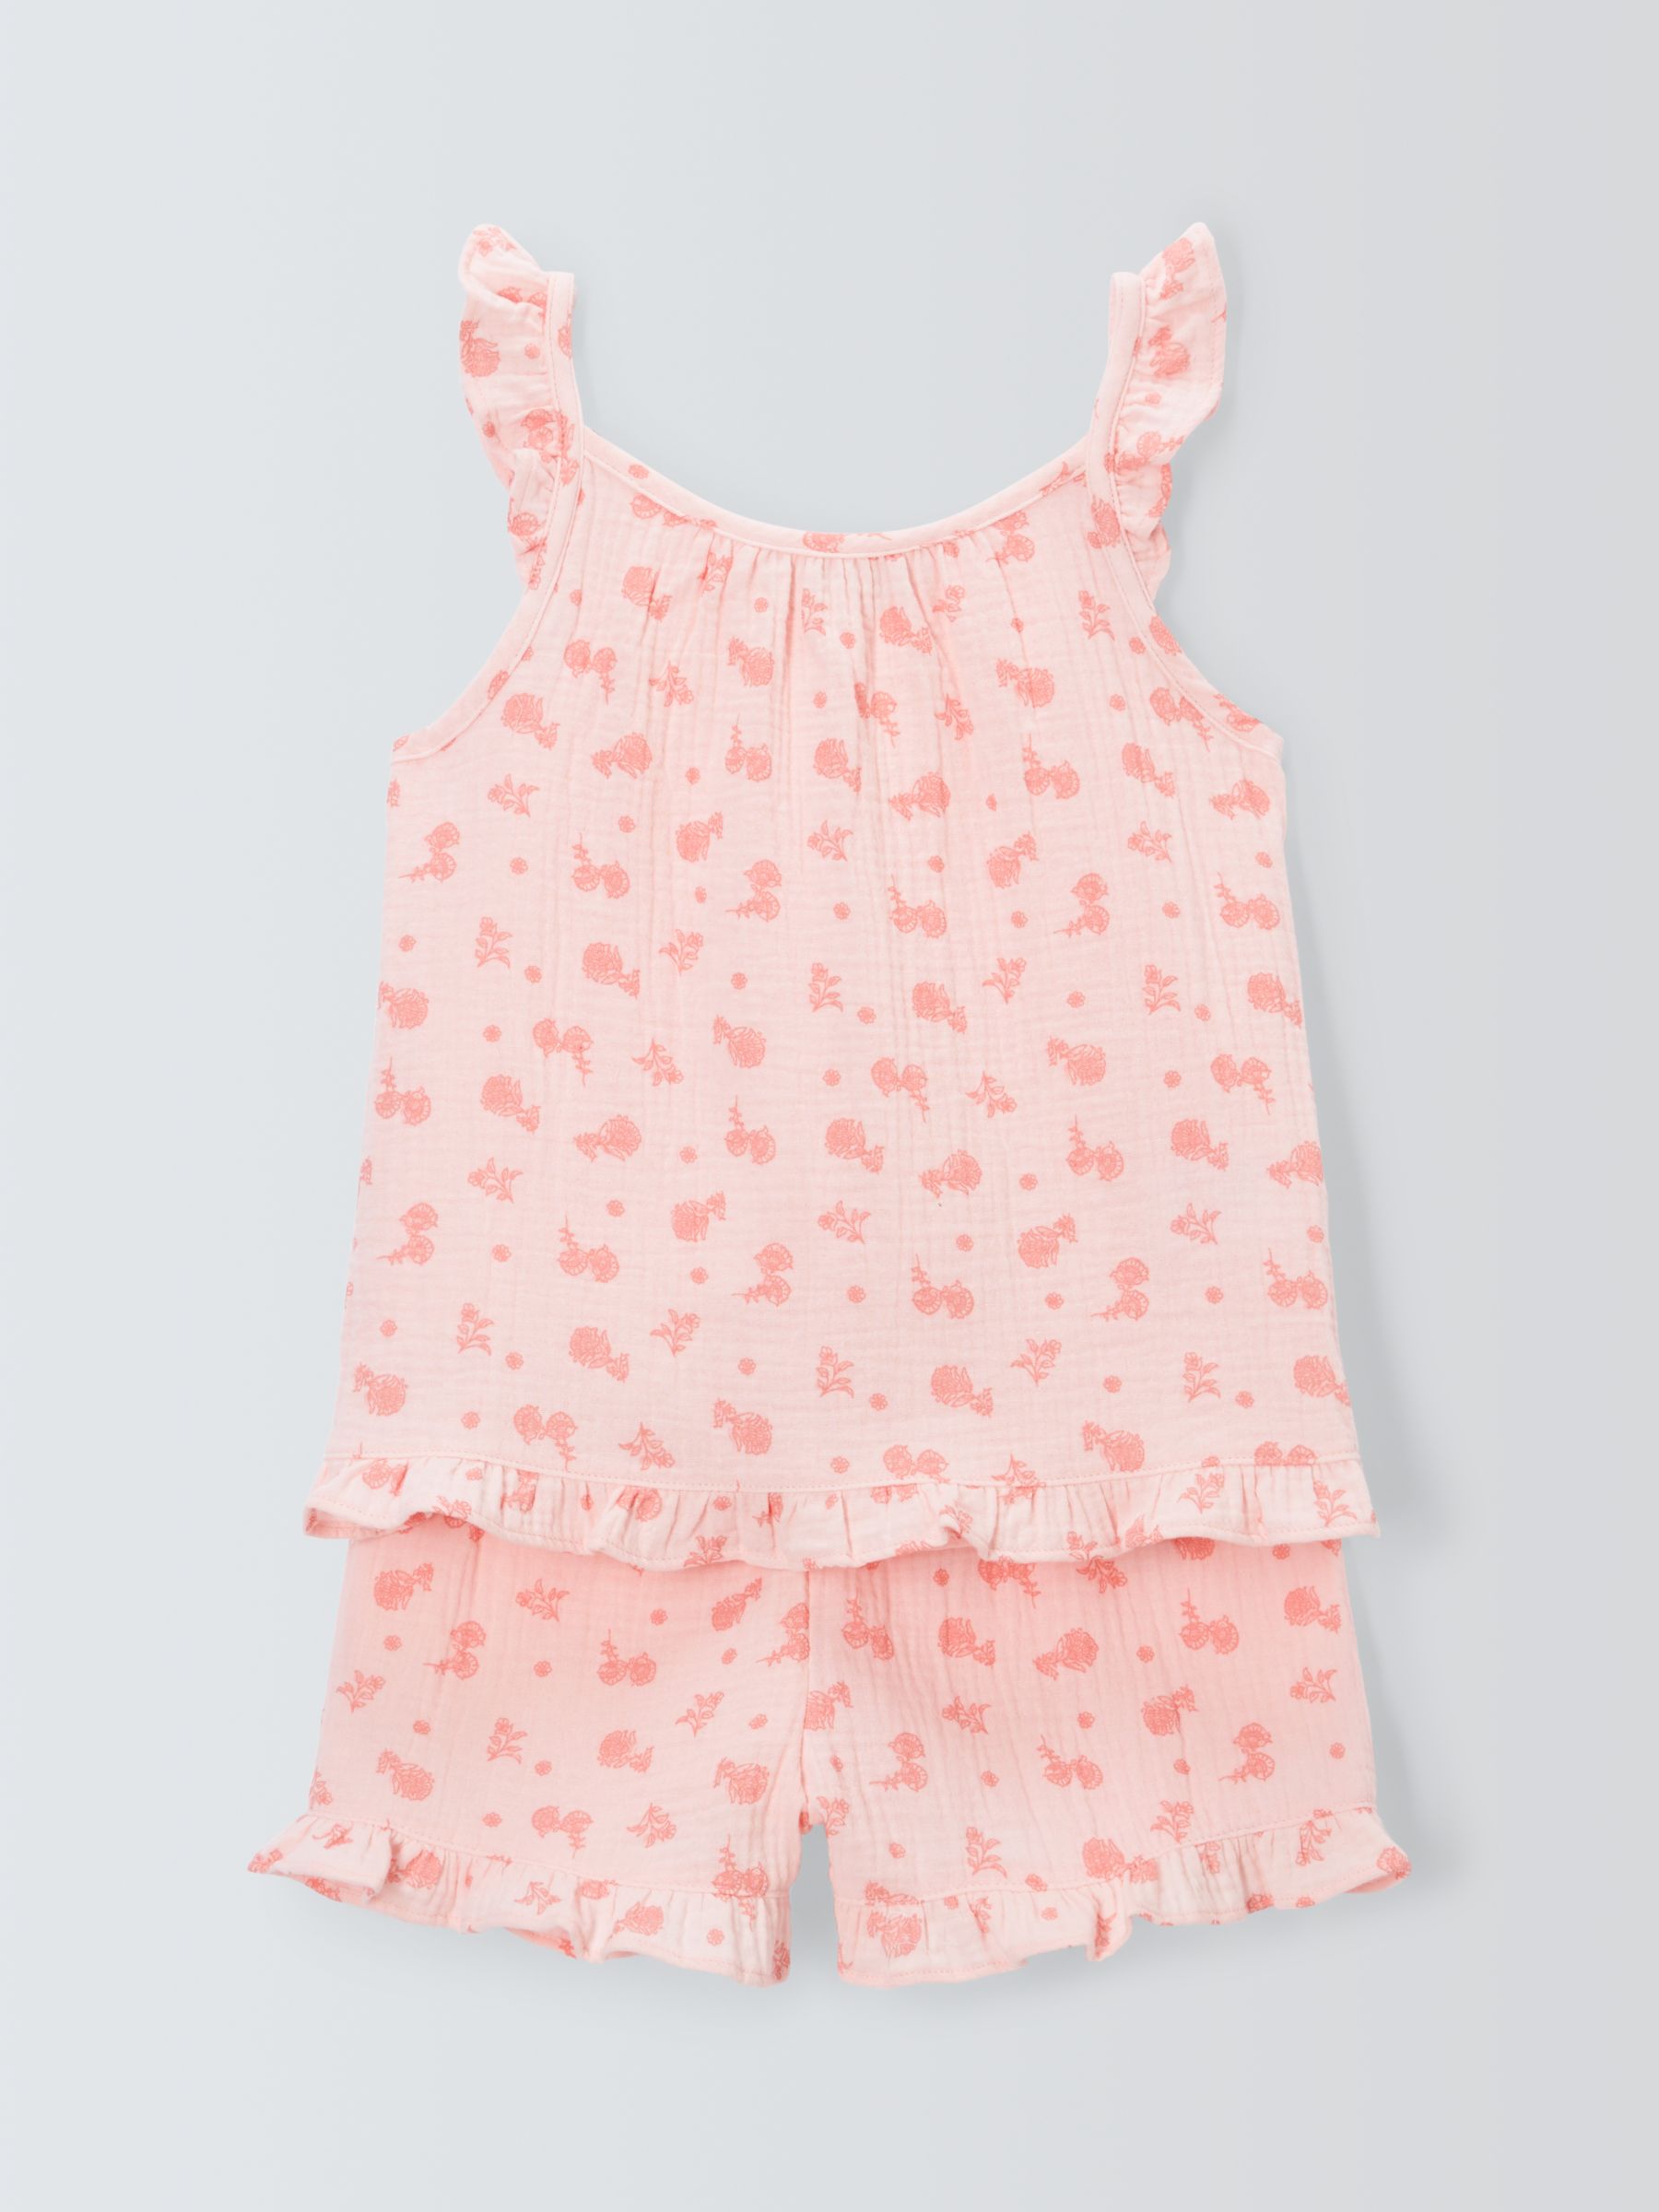 John Lewis Kids' Floral Cotton Muslin Shortie Pyjama Set, Pink, 10 years